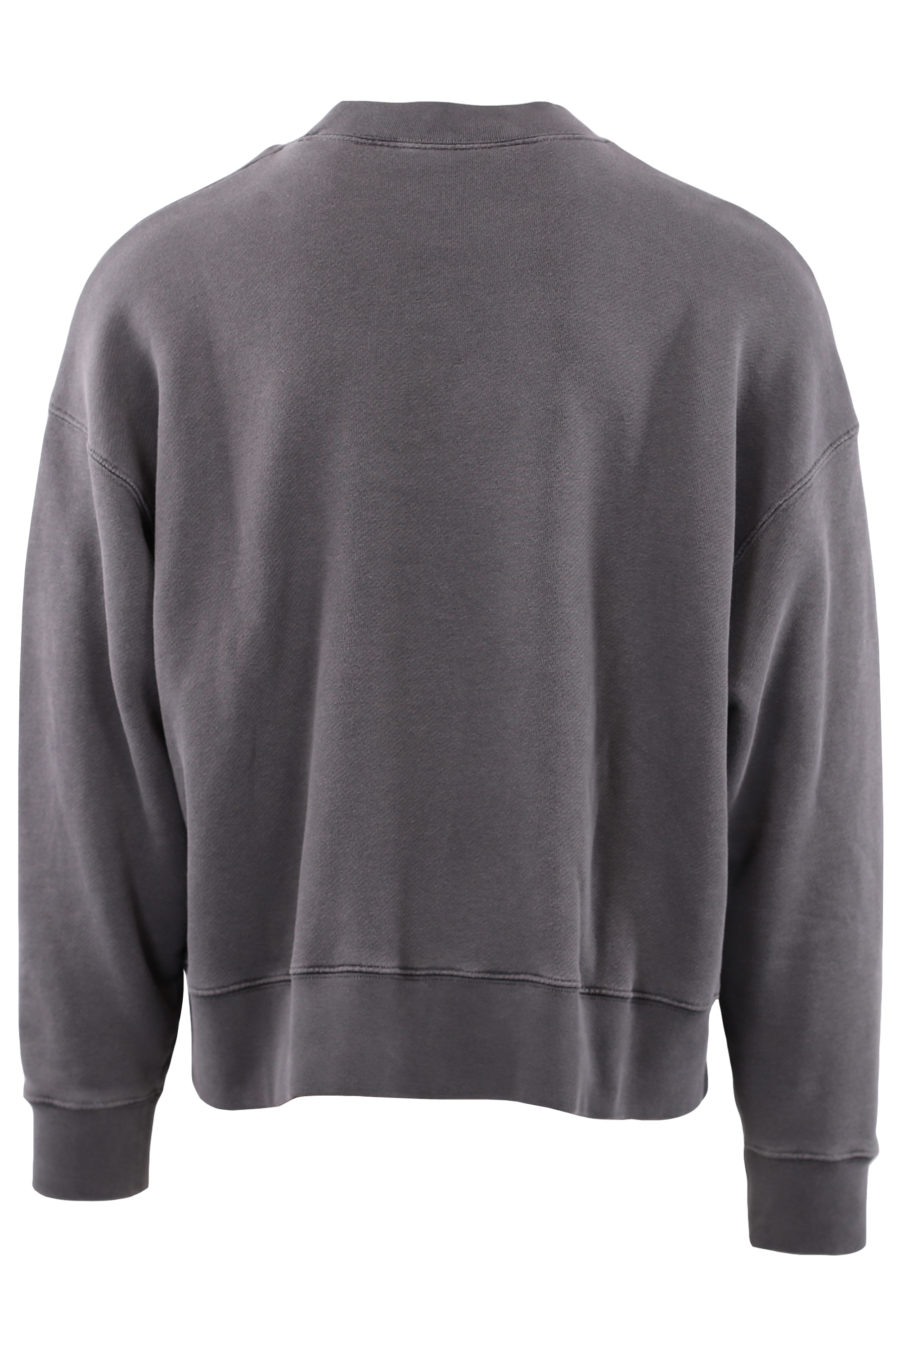 Graues Sweatshirt mit Markenlogo - IMG 7181